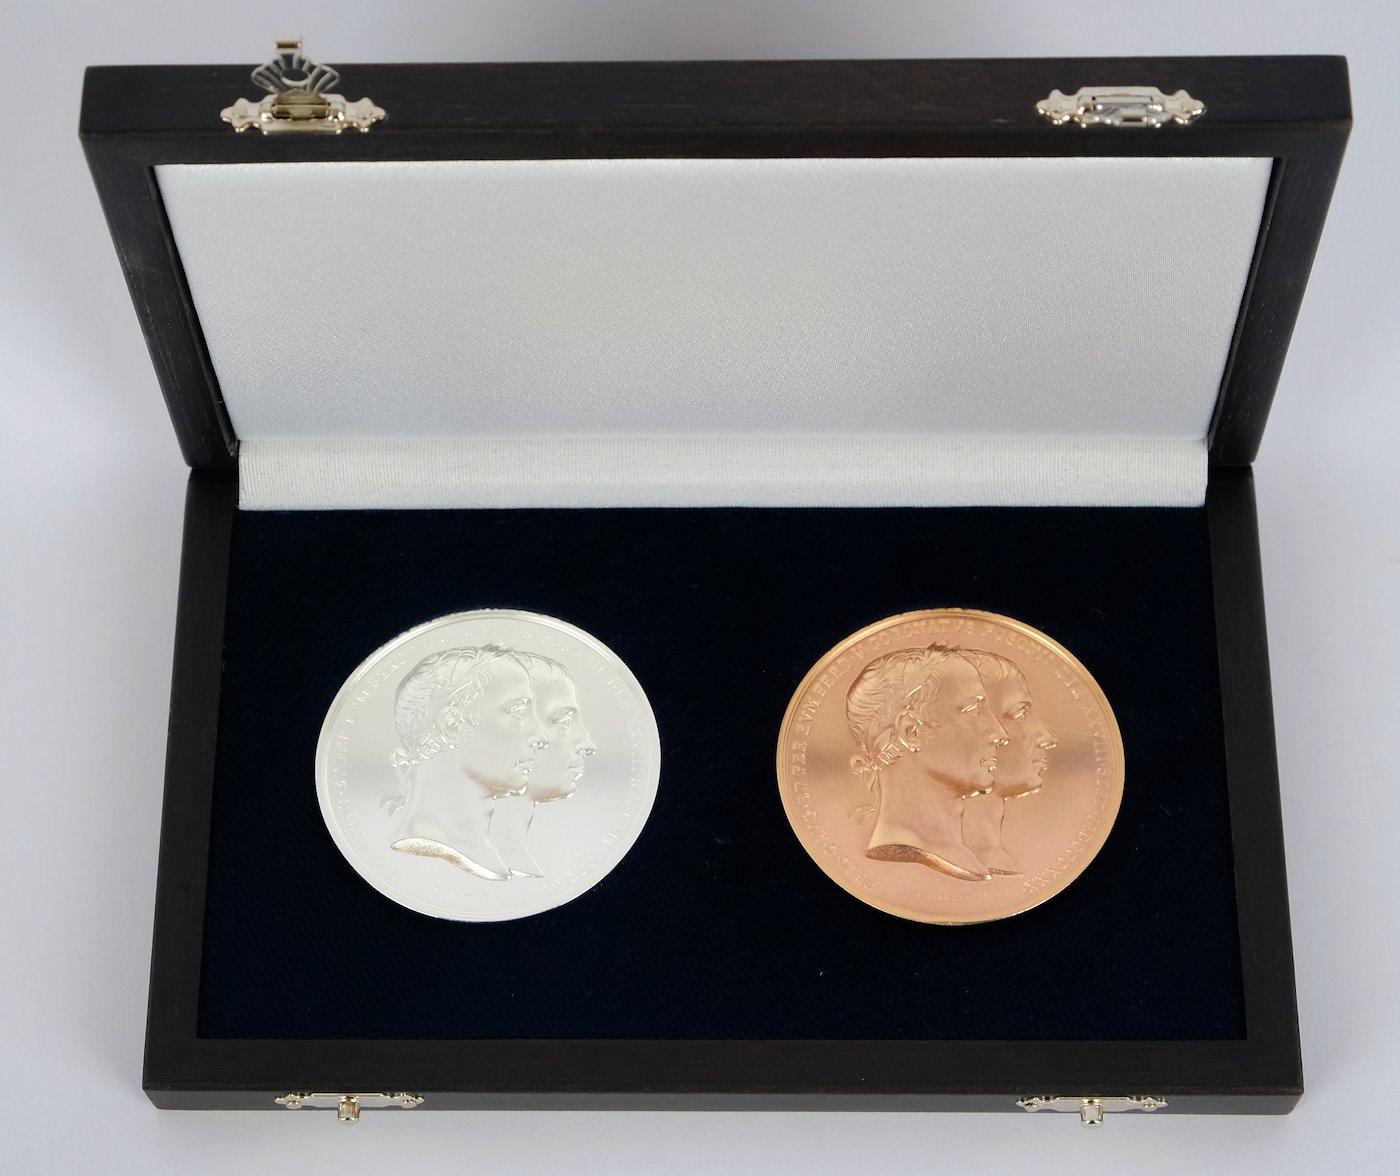 .. - SET stříbrné a bronzové Korunovační medaile Ferdinanda V. 1830 Novoražba, stříbro 999/1000, hrubá hmotnost 56,5 g, bronz hrubá hmotnost 47 g